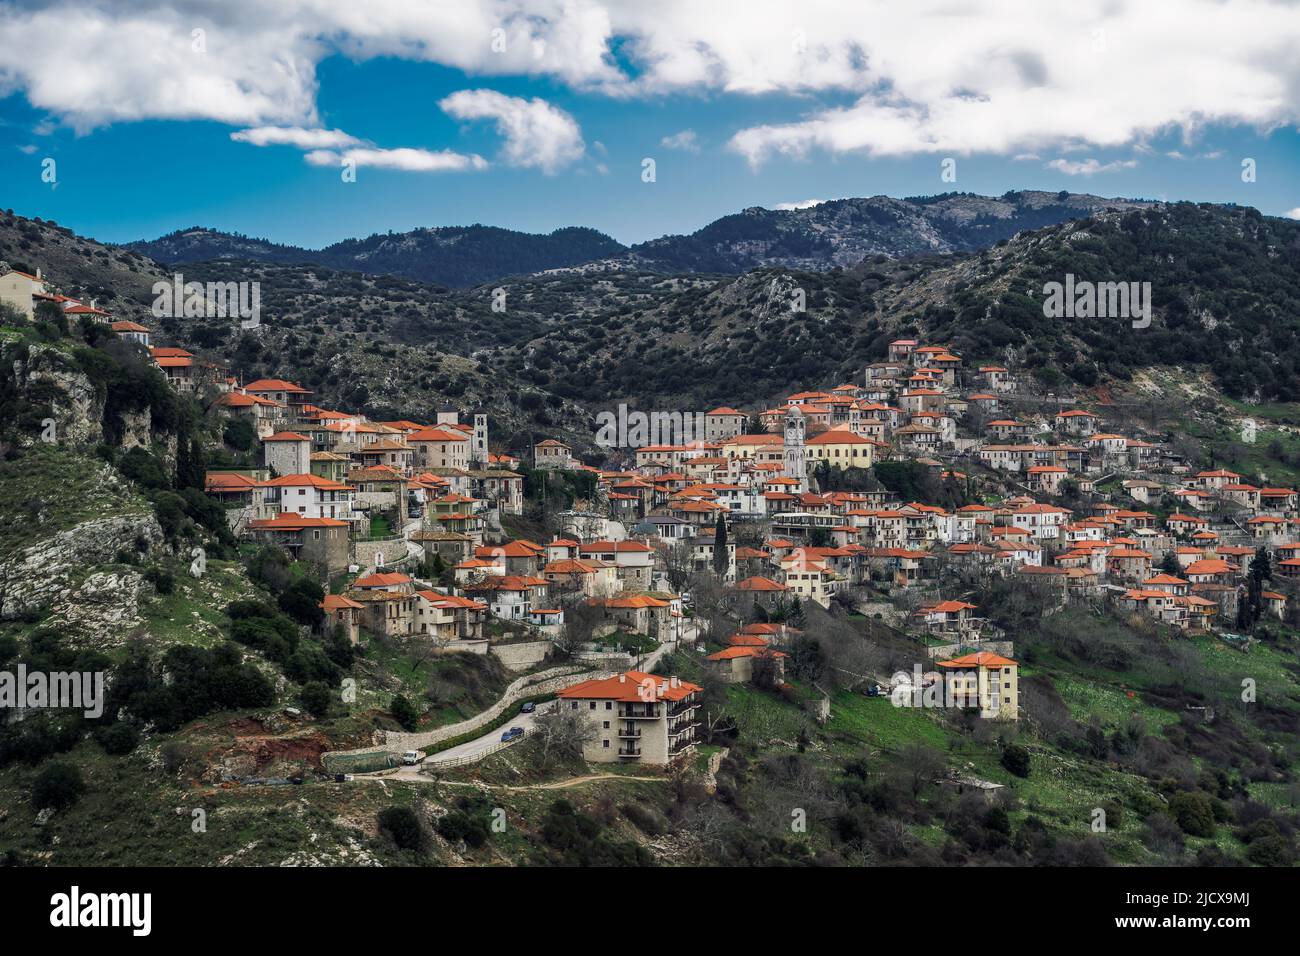 Panorama montano del villaggio greco con case basse tradizionali con tegole rosse a Dimitsana, Arcadia, Peloponneso, Grecia, Europa Foto Stock